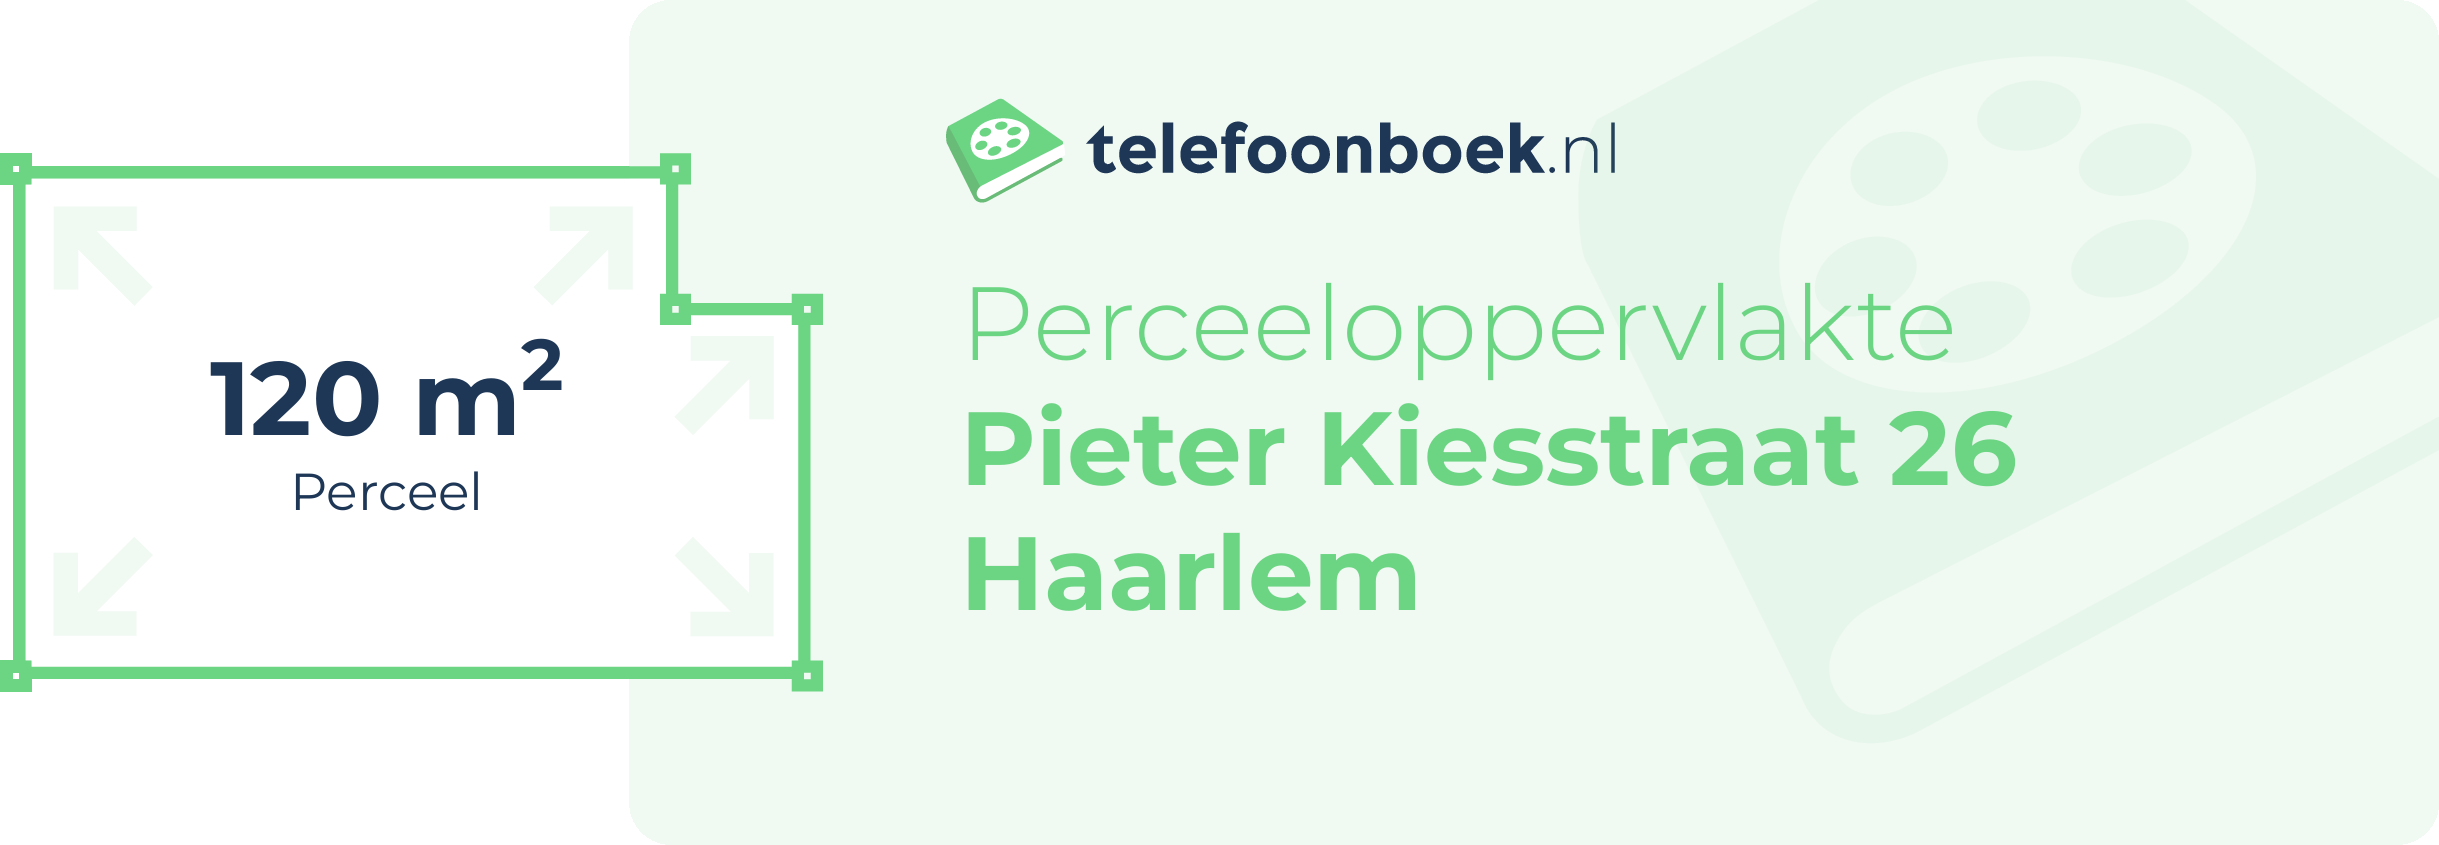 Perceeloppervlakte Pieter Kiesstraat 26 Haarlem